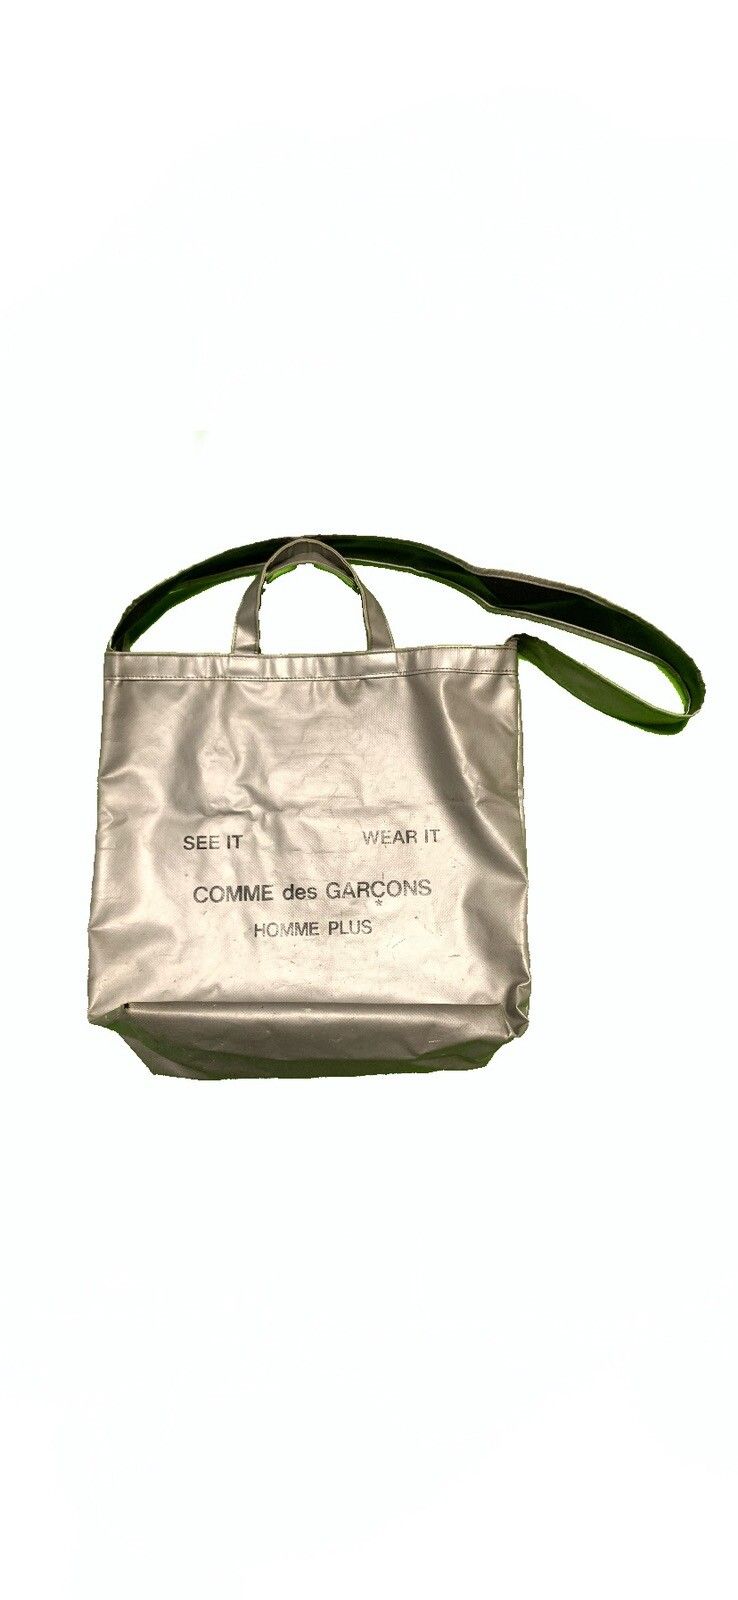 Comme Des Garcons See It Wear It Bag | Grailed